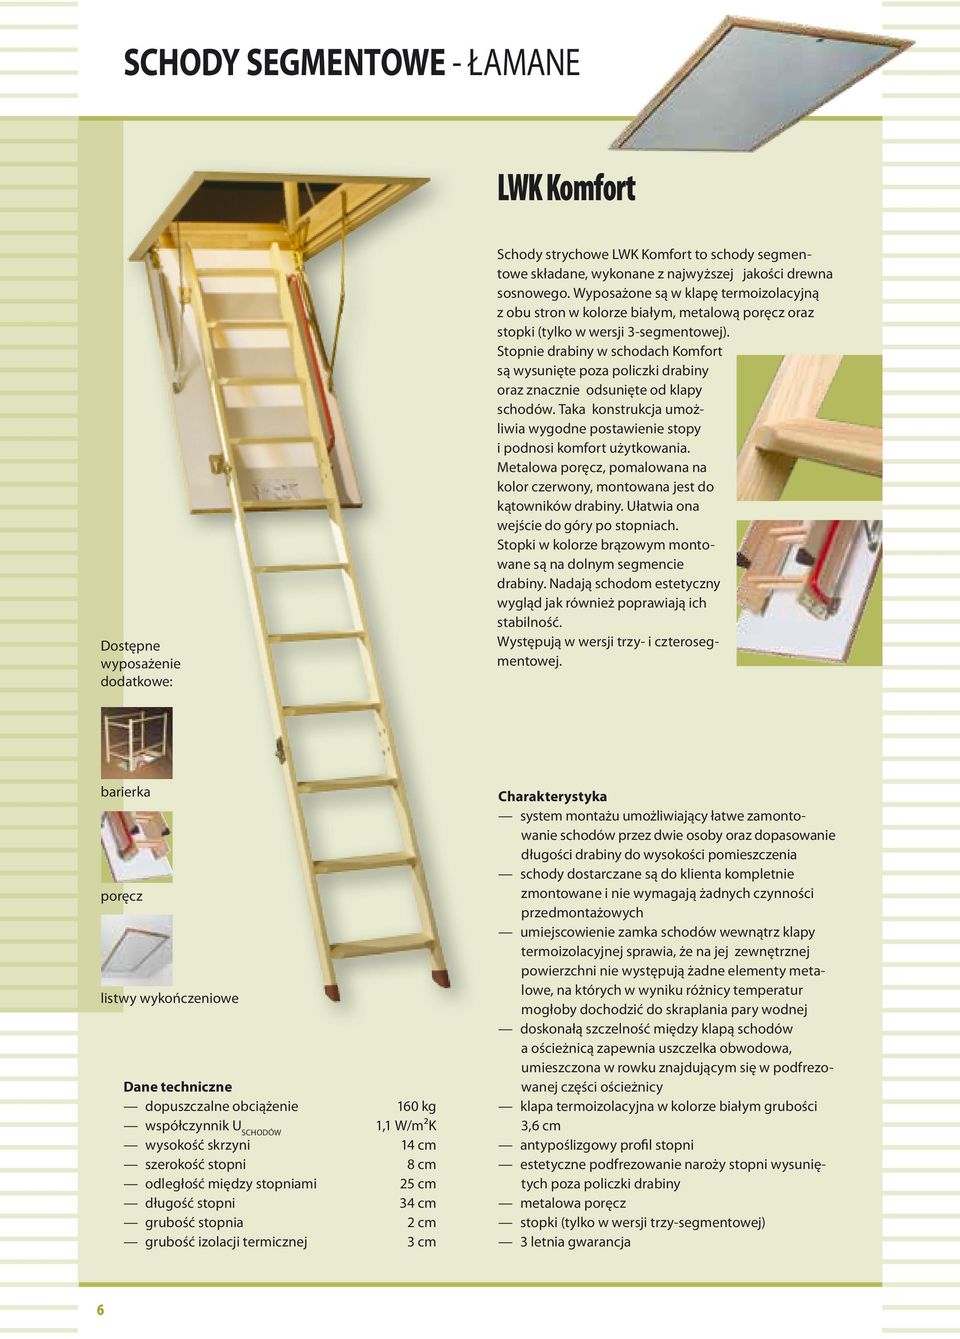 Stopnie drabiny w schodach Komfort są wysunięte poza policzki drabiny oraz znacznie odsunięte od klapy schodów. Taka konstrukcja umożliwia wygodne postawienie stopy i podnosi komfort użytkowania.